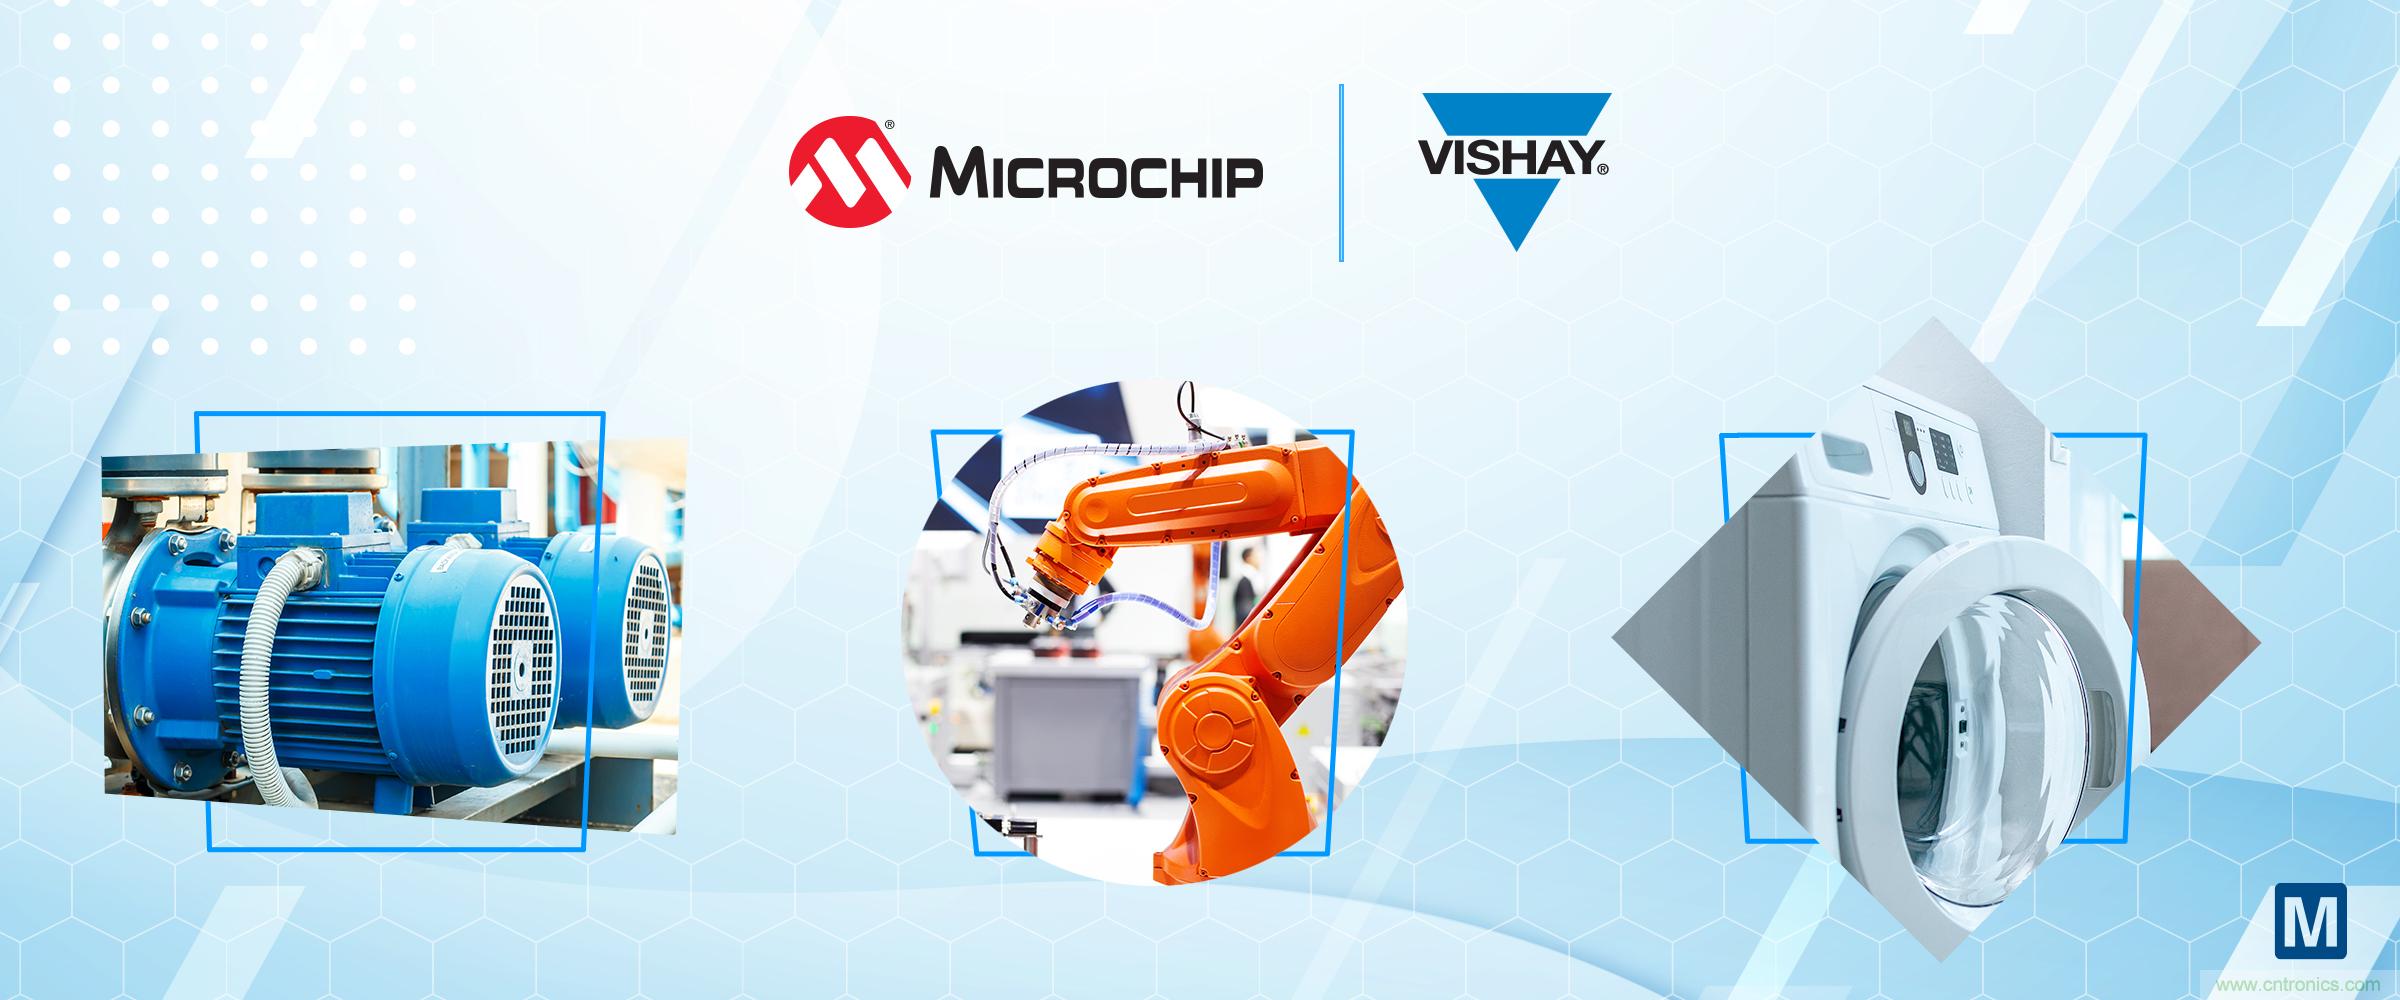 贸泽电子推出Microchip和Vishay电阻式电流传感解决方案网站